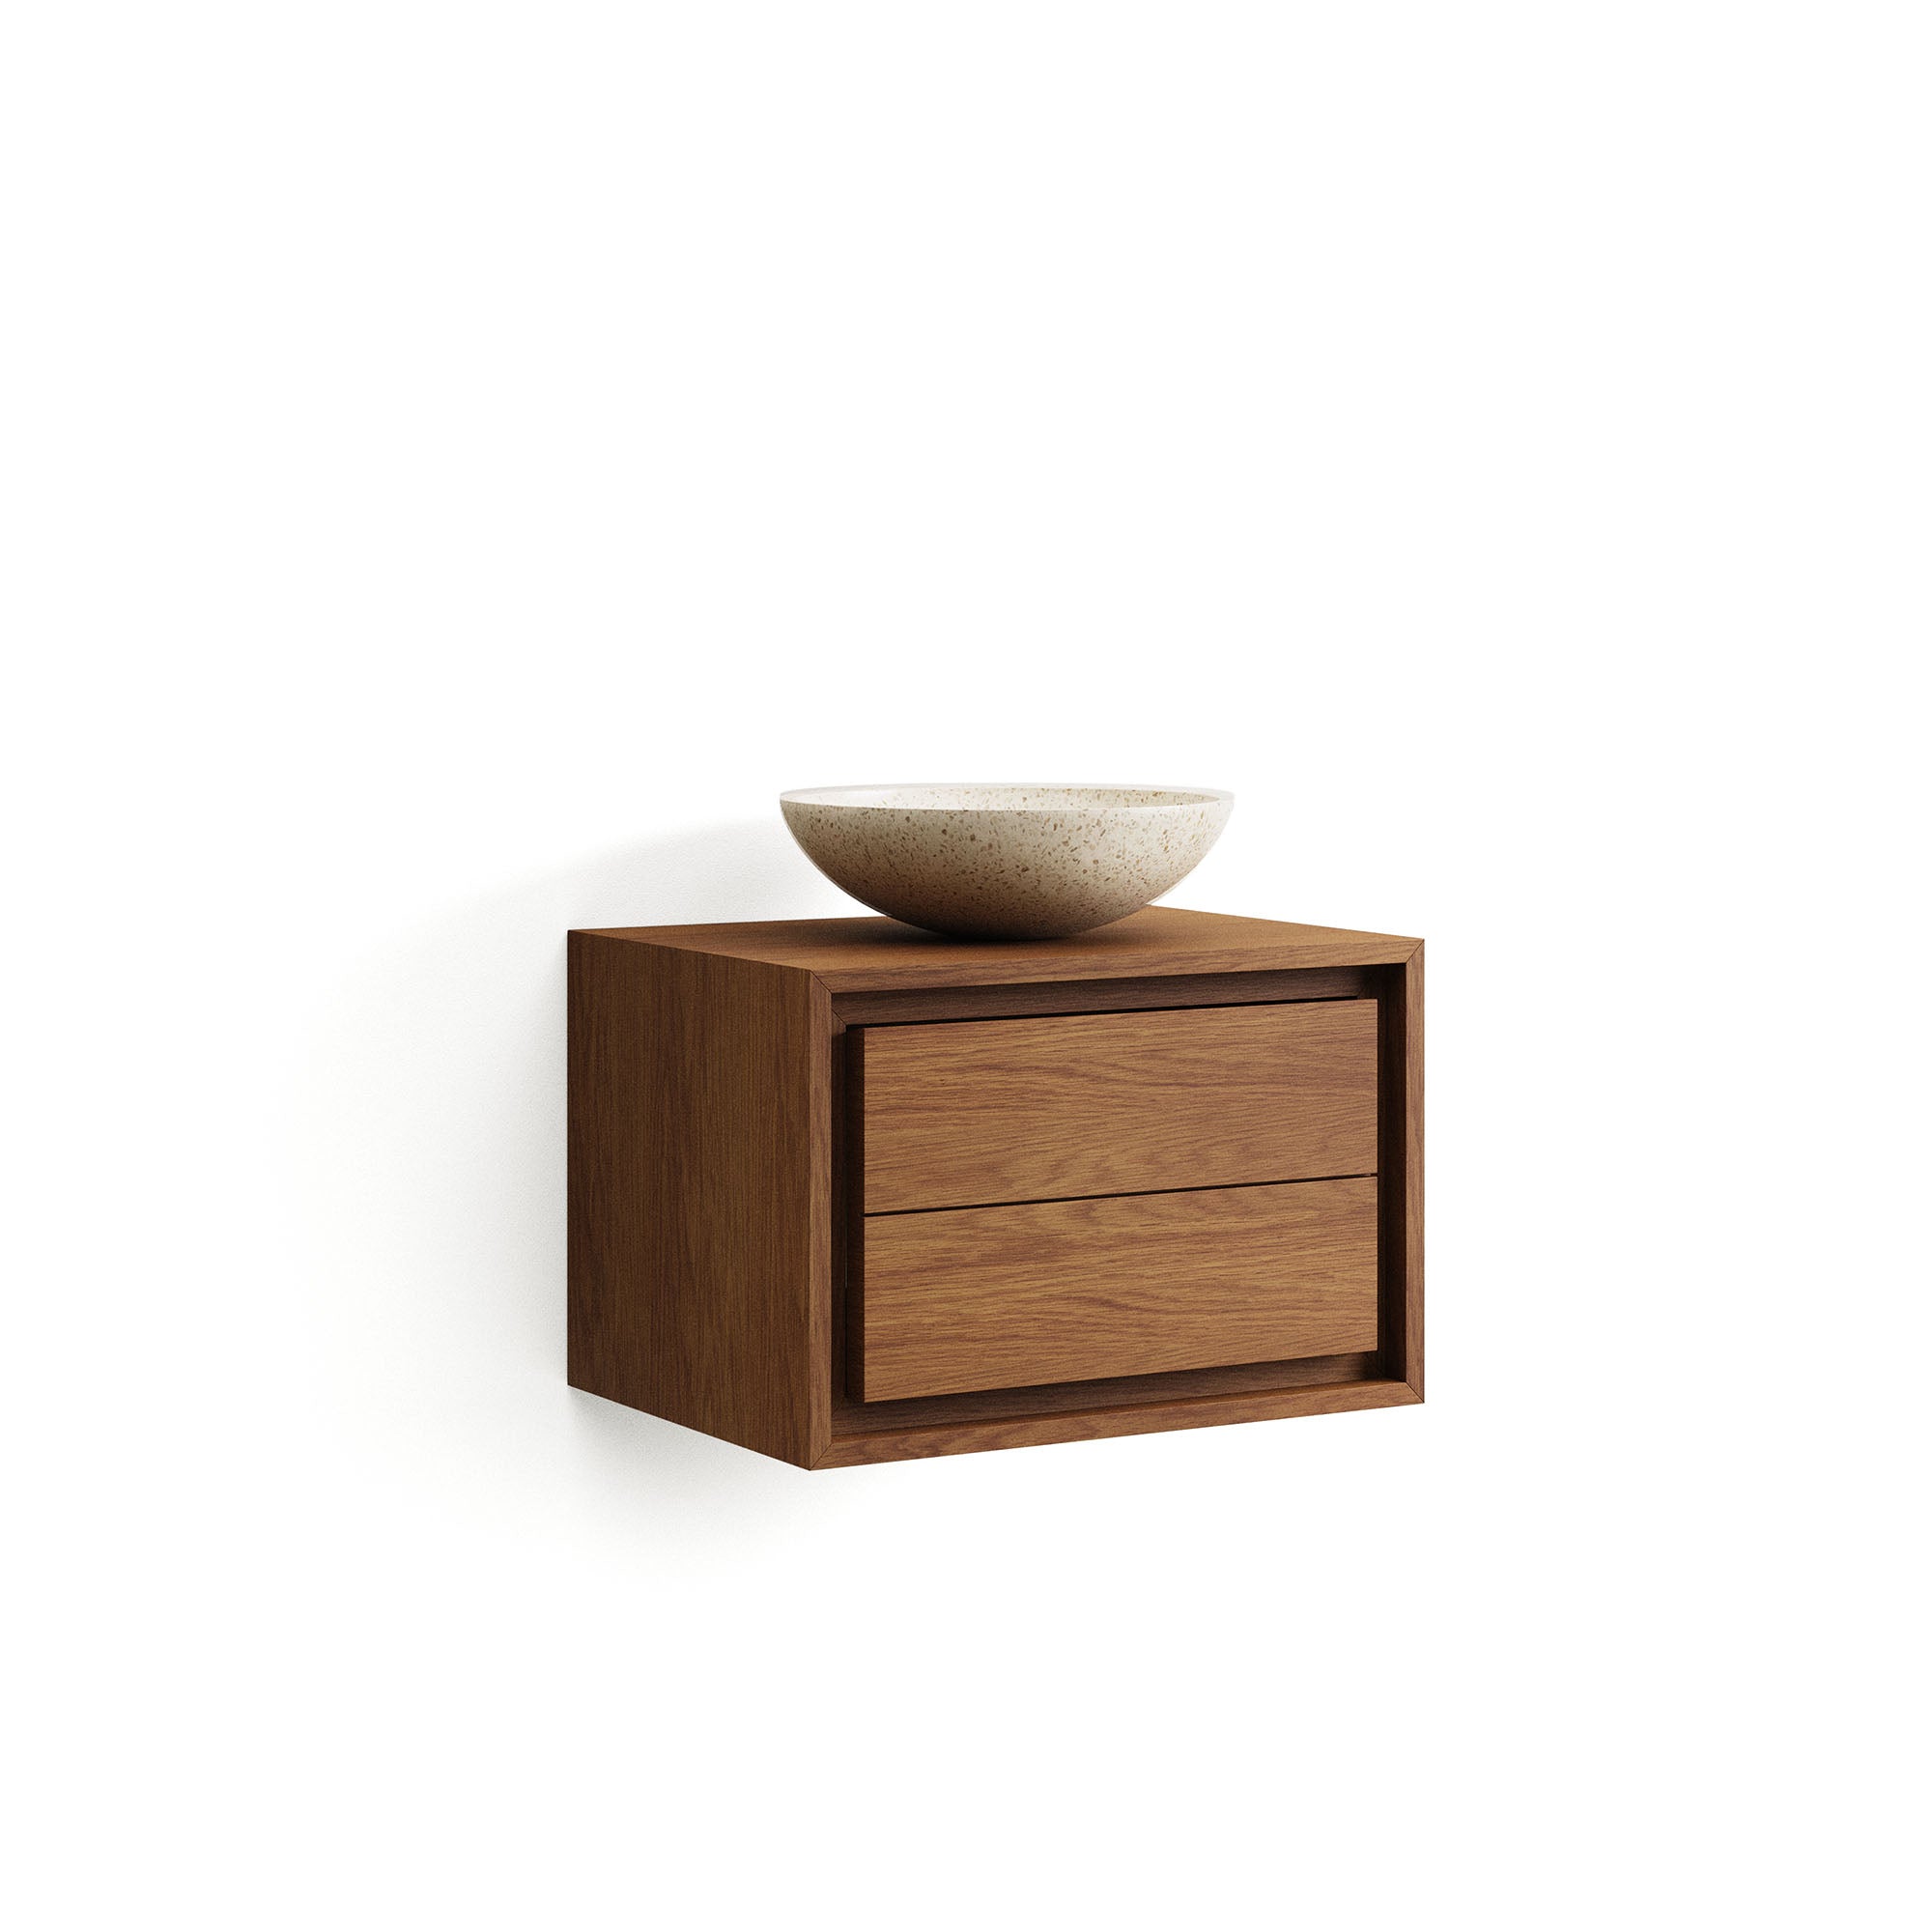 Kenta bathroom furniture in solid teak wood with a walnut finish,  60 x 45 cm